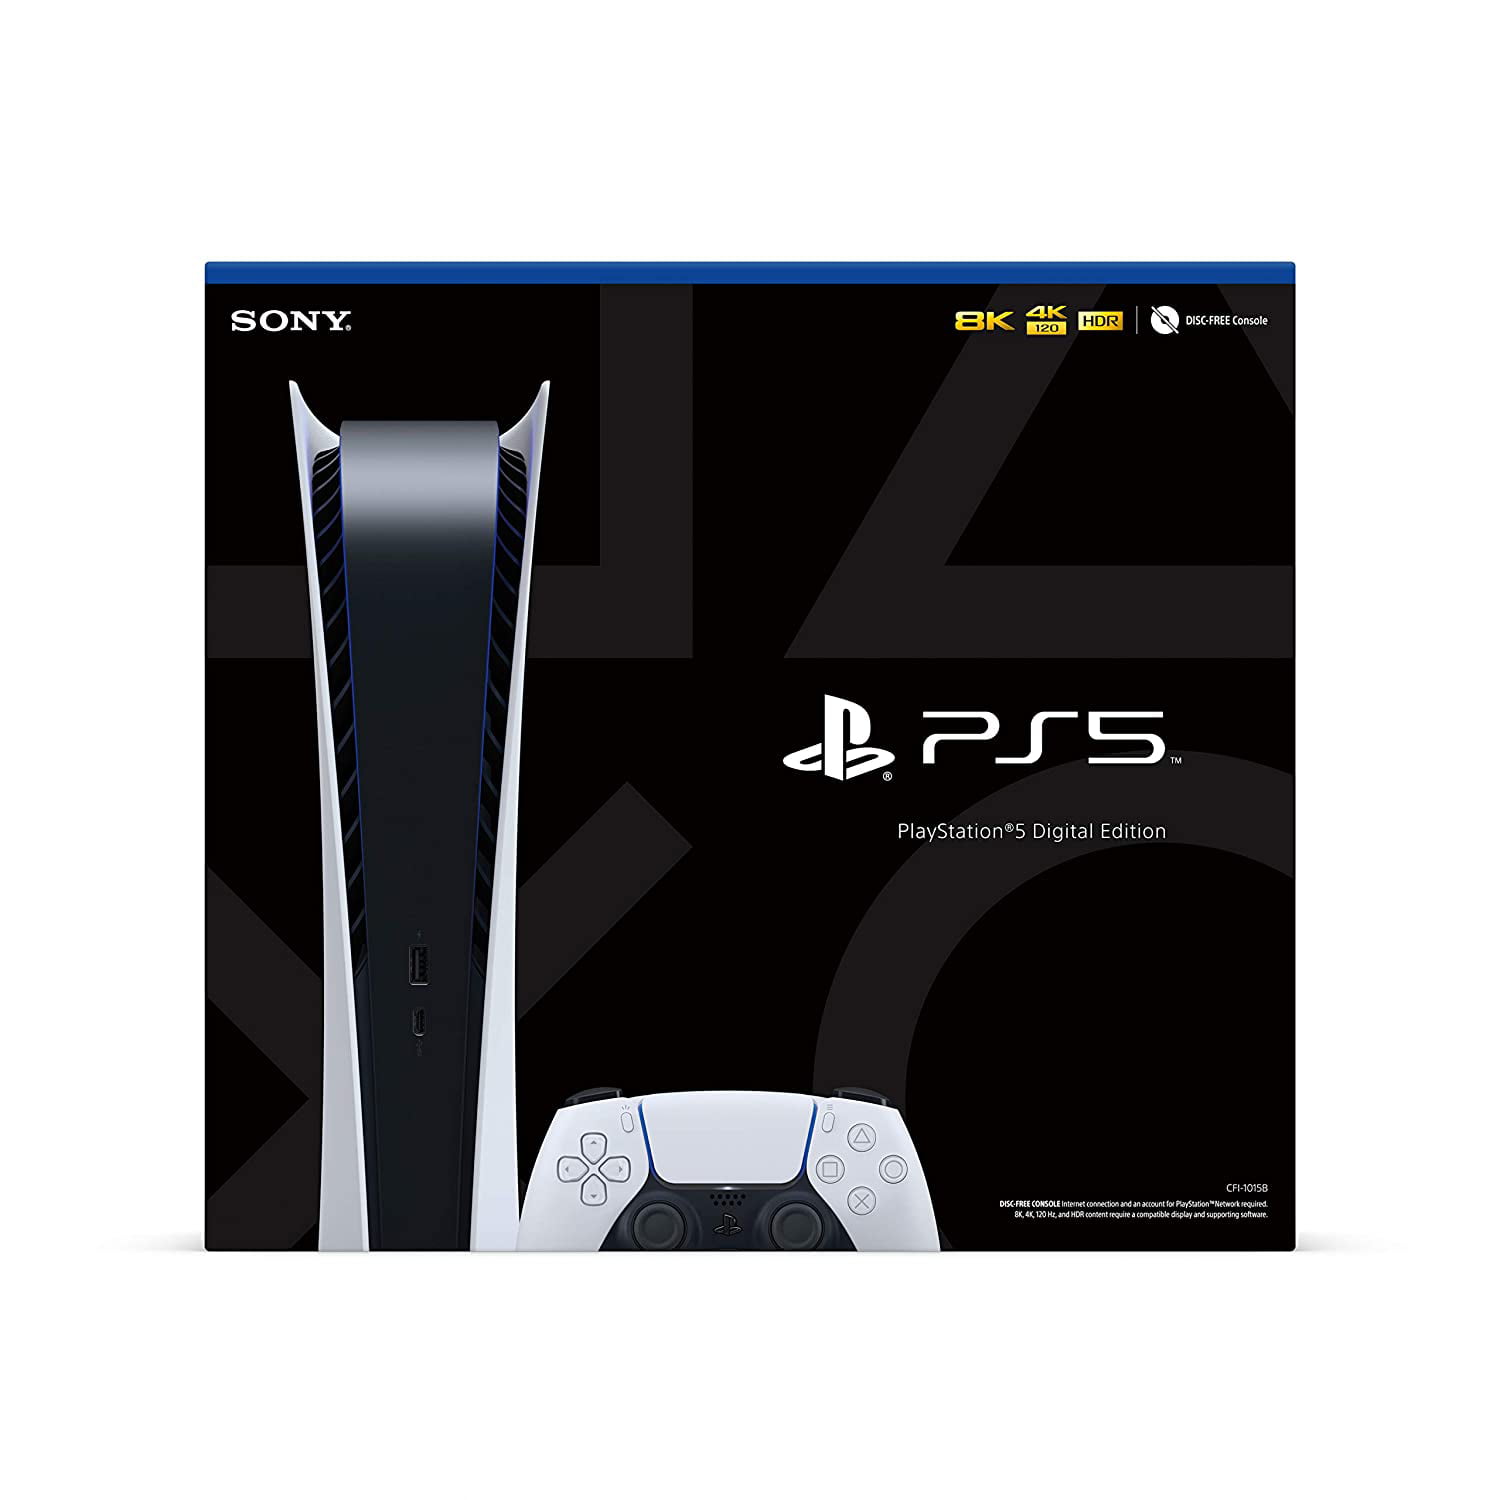 Sony PS5 Digital Edition – PlayStation 5